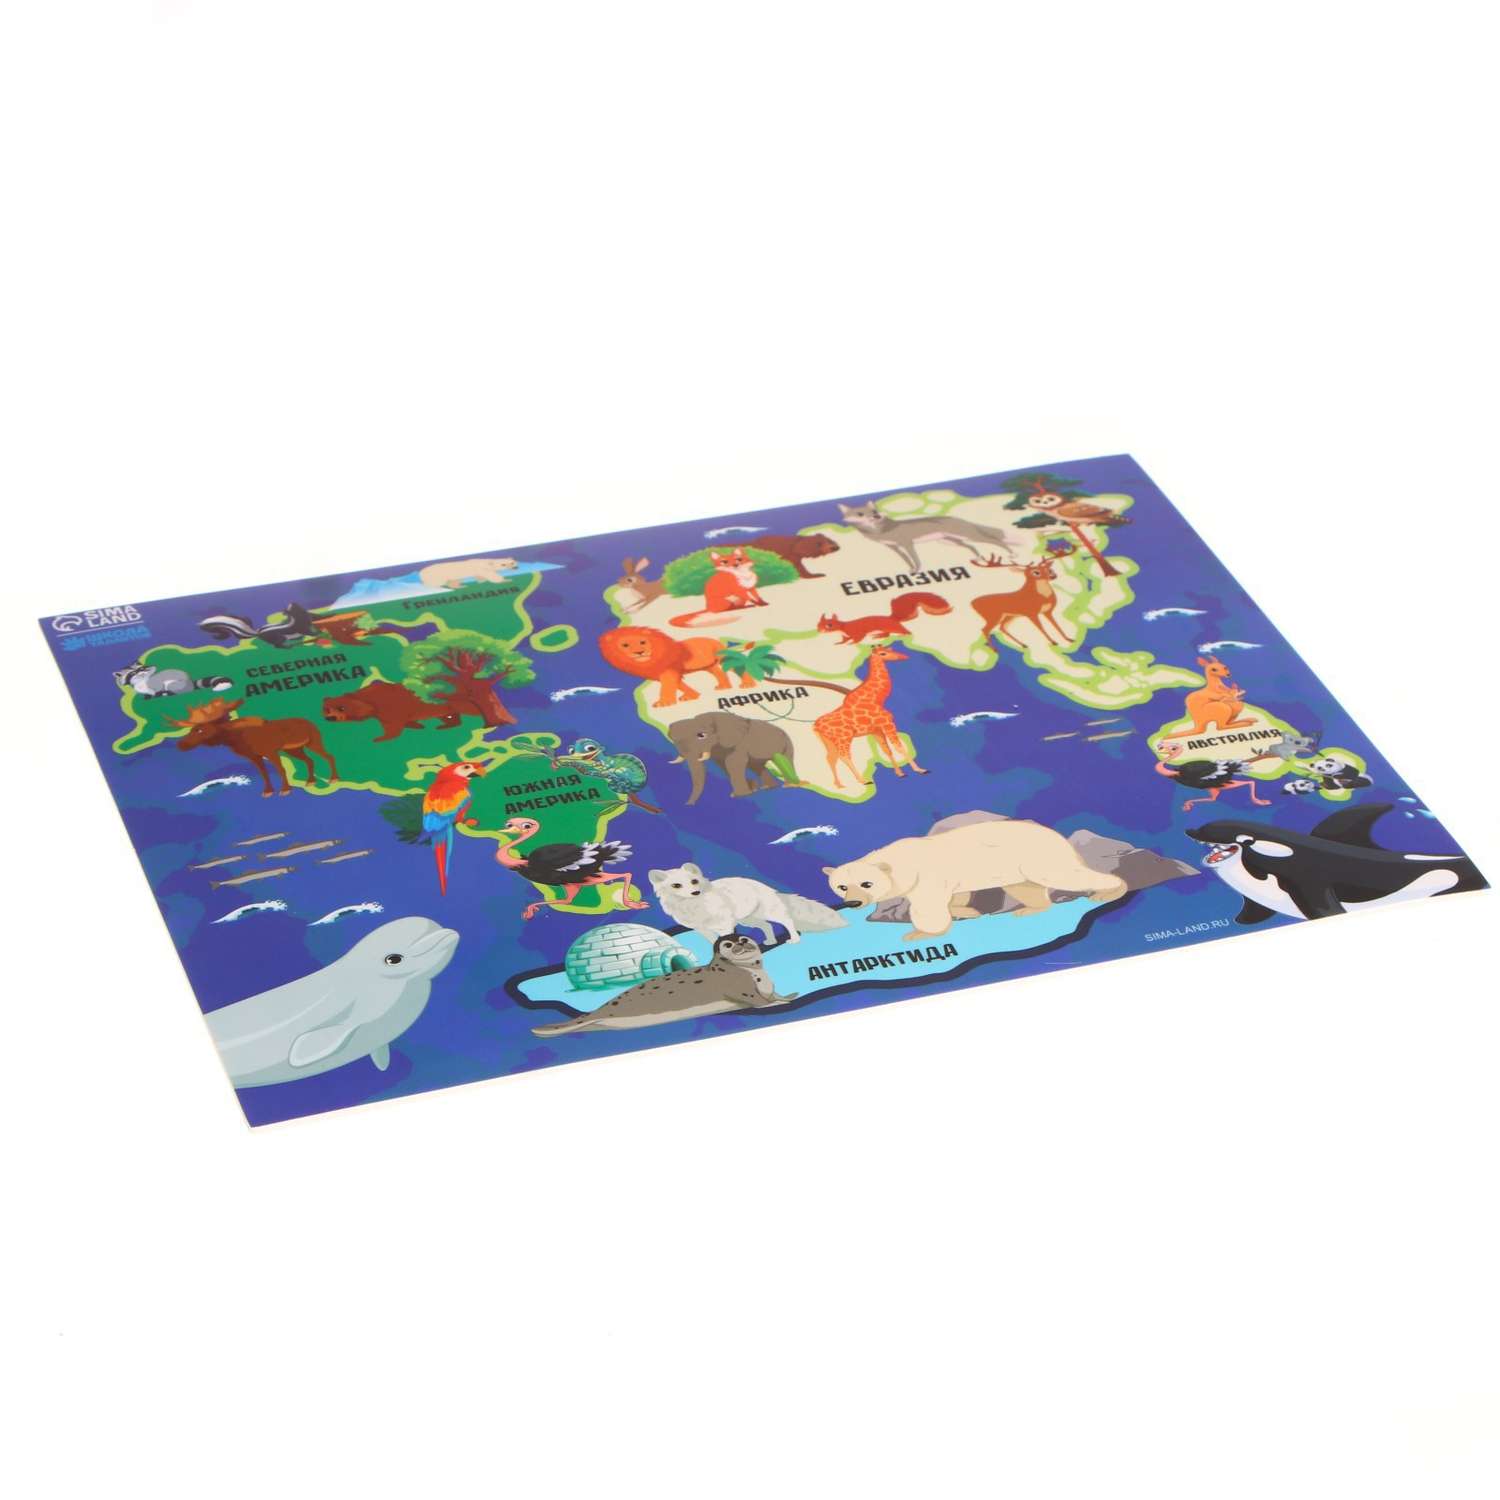 Коврик Школа Талантов для лепки с нескользящим покрытием «Карта мира» 29.7х21 см - фото 3